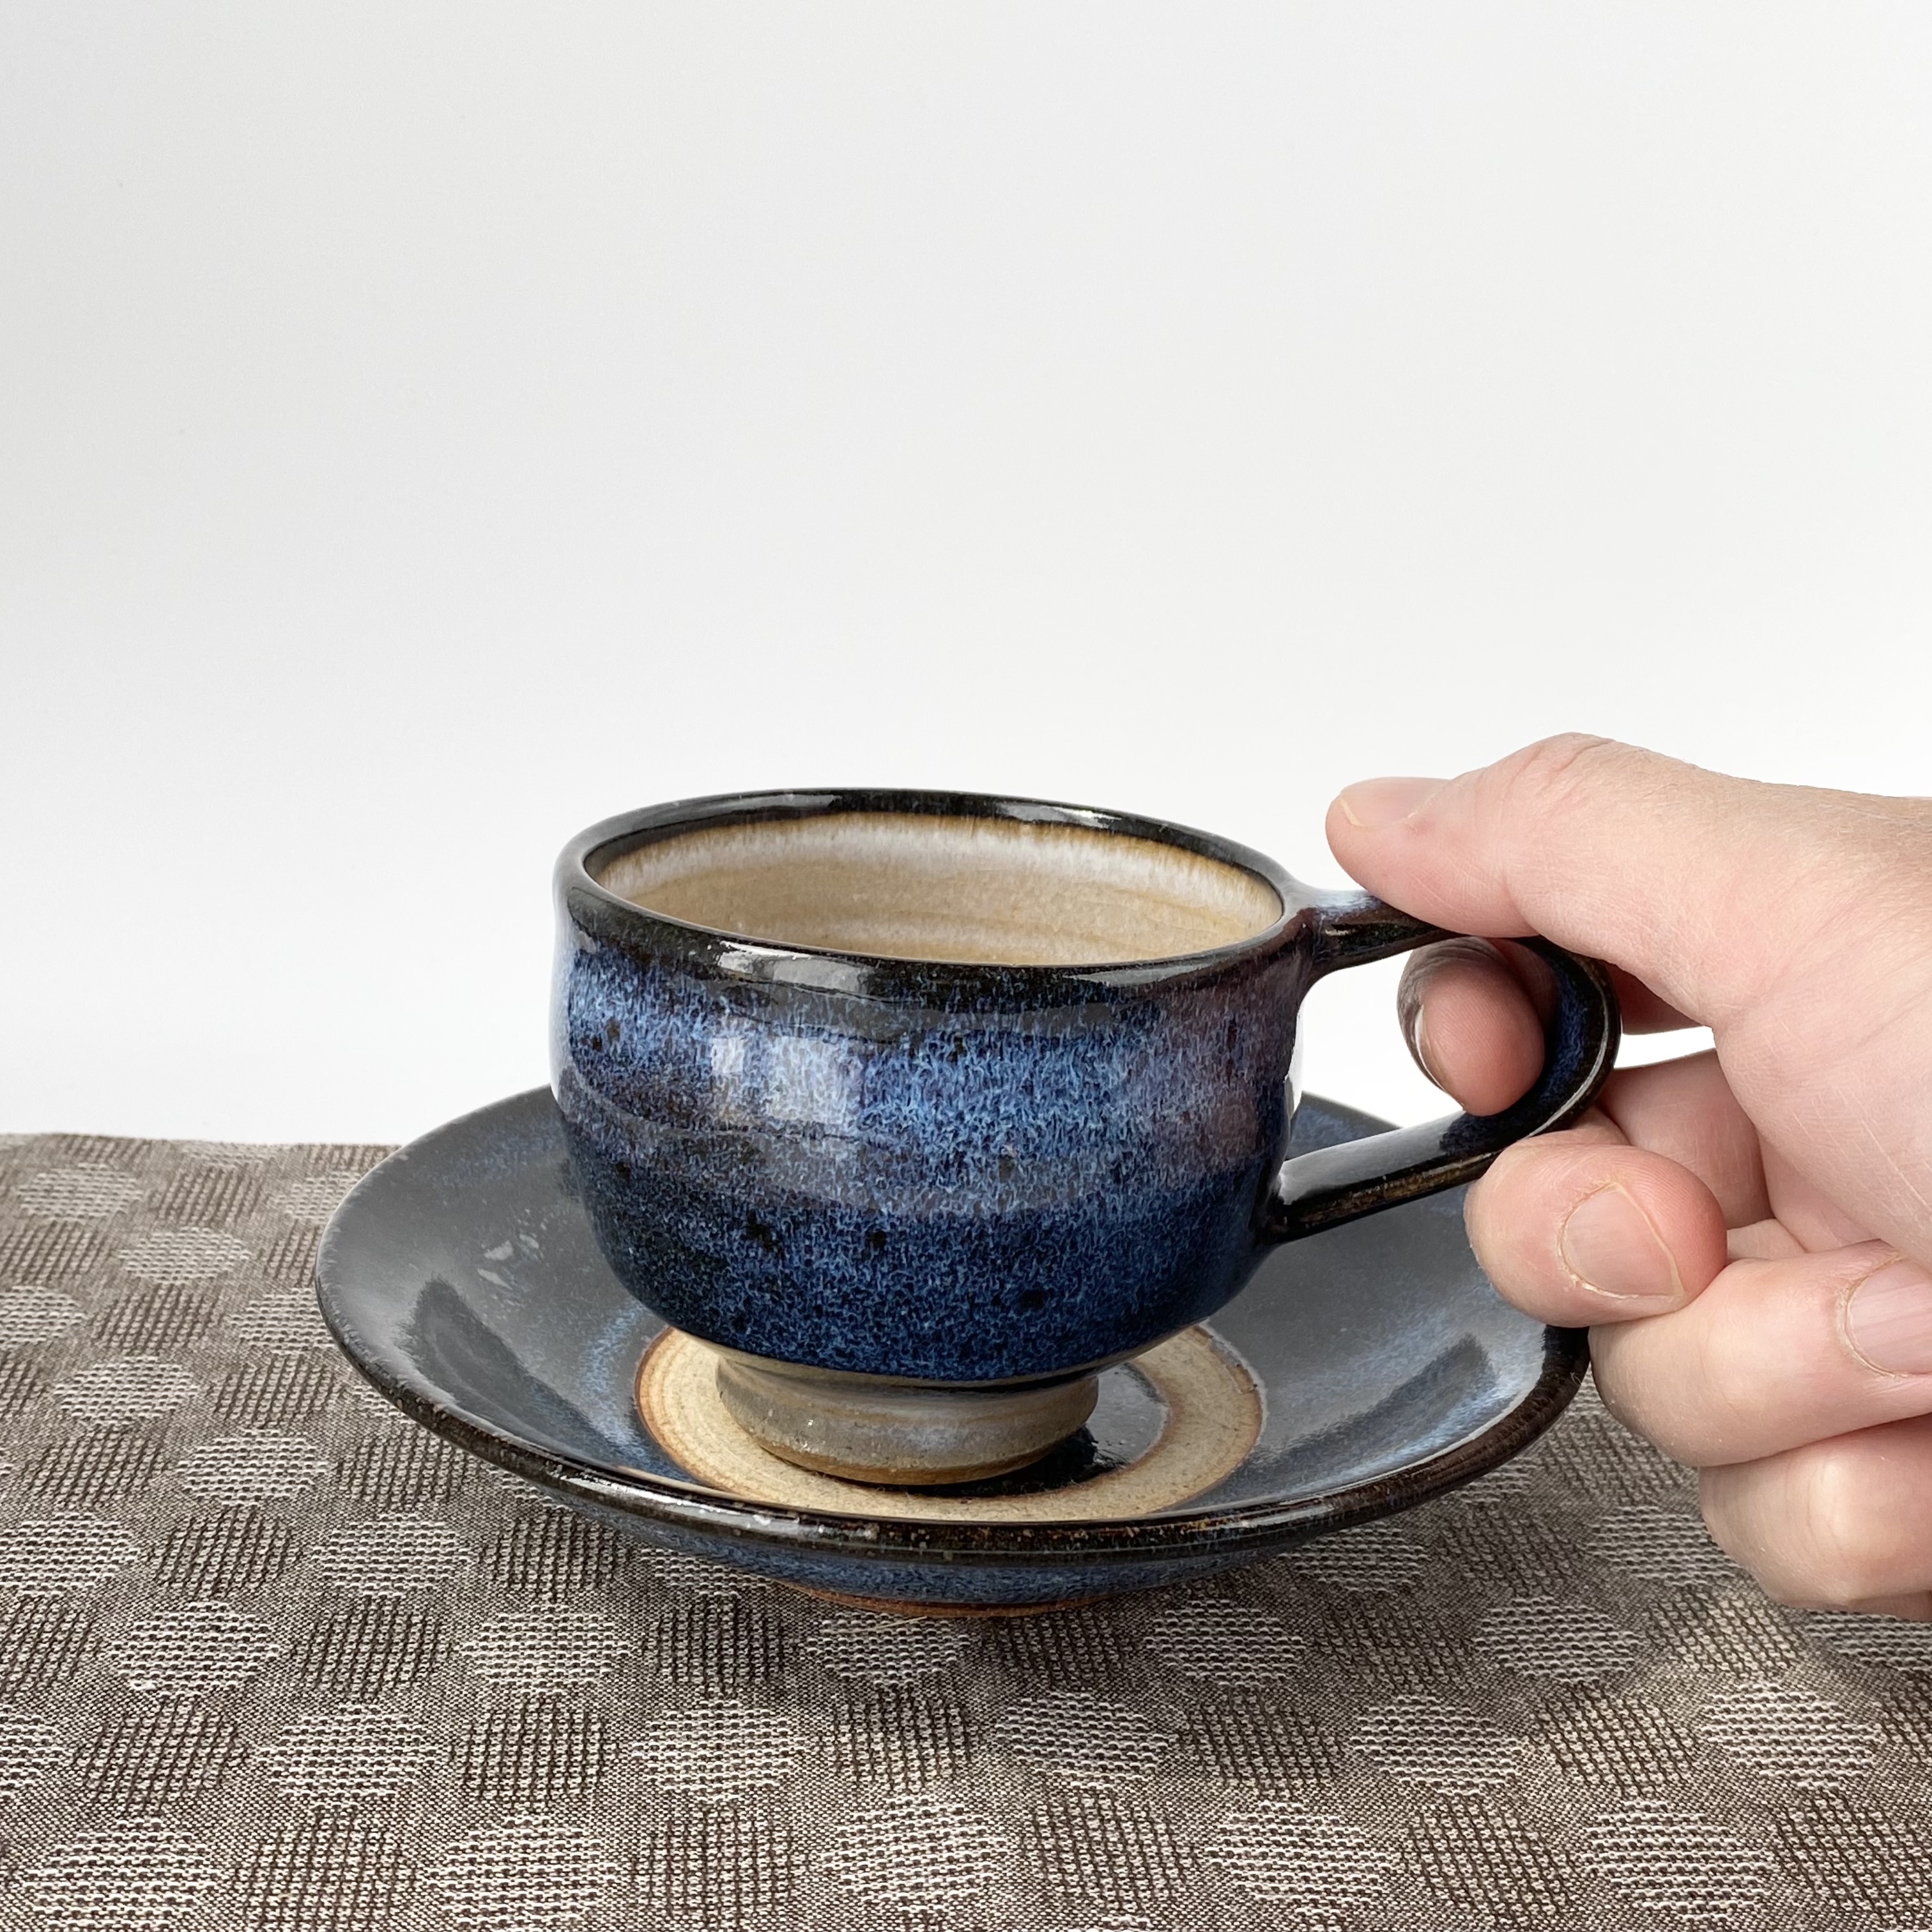 ブルーがきれいなコーヒーカップソーサ― 珈琲碗皿 紅茶碗 カフェ 手仕事 民藝 窯元【和陶器 ブルー ベージュ】 